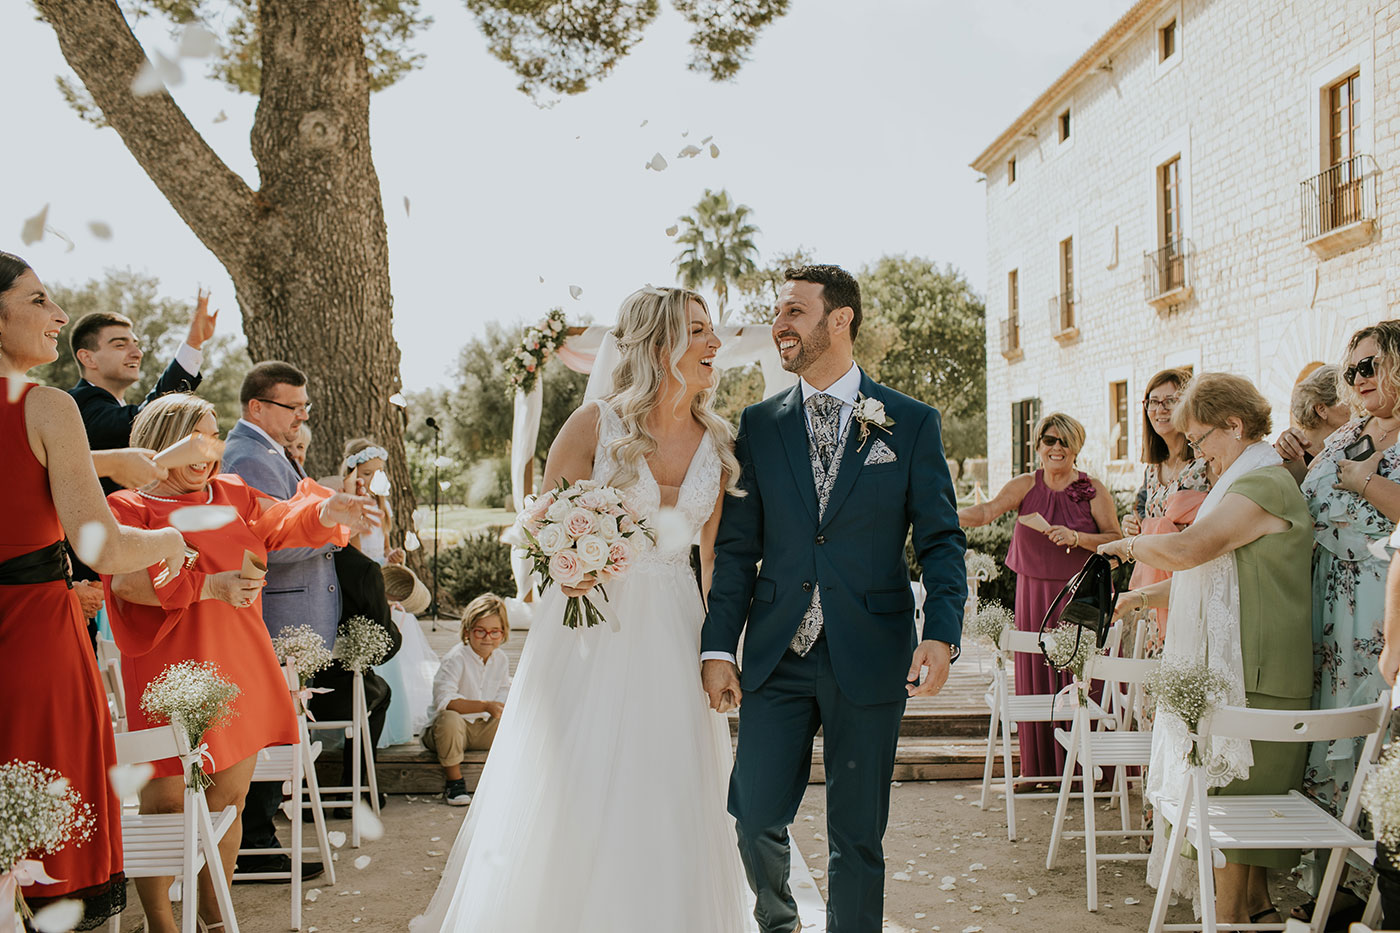 Marta & David’s Spanish Farmhouse Wedding